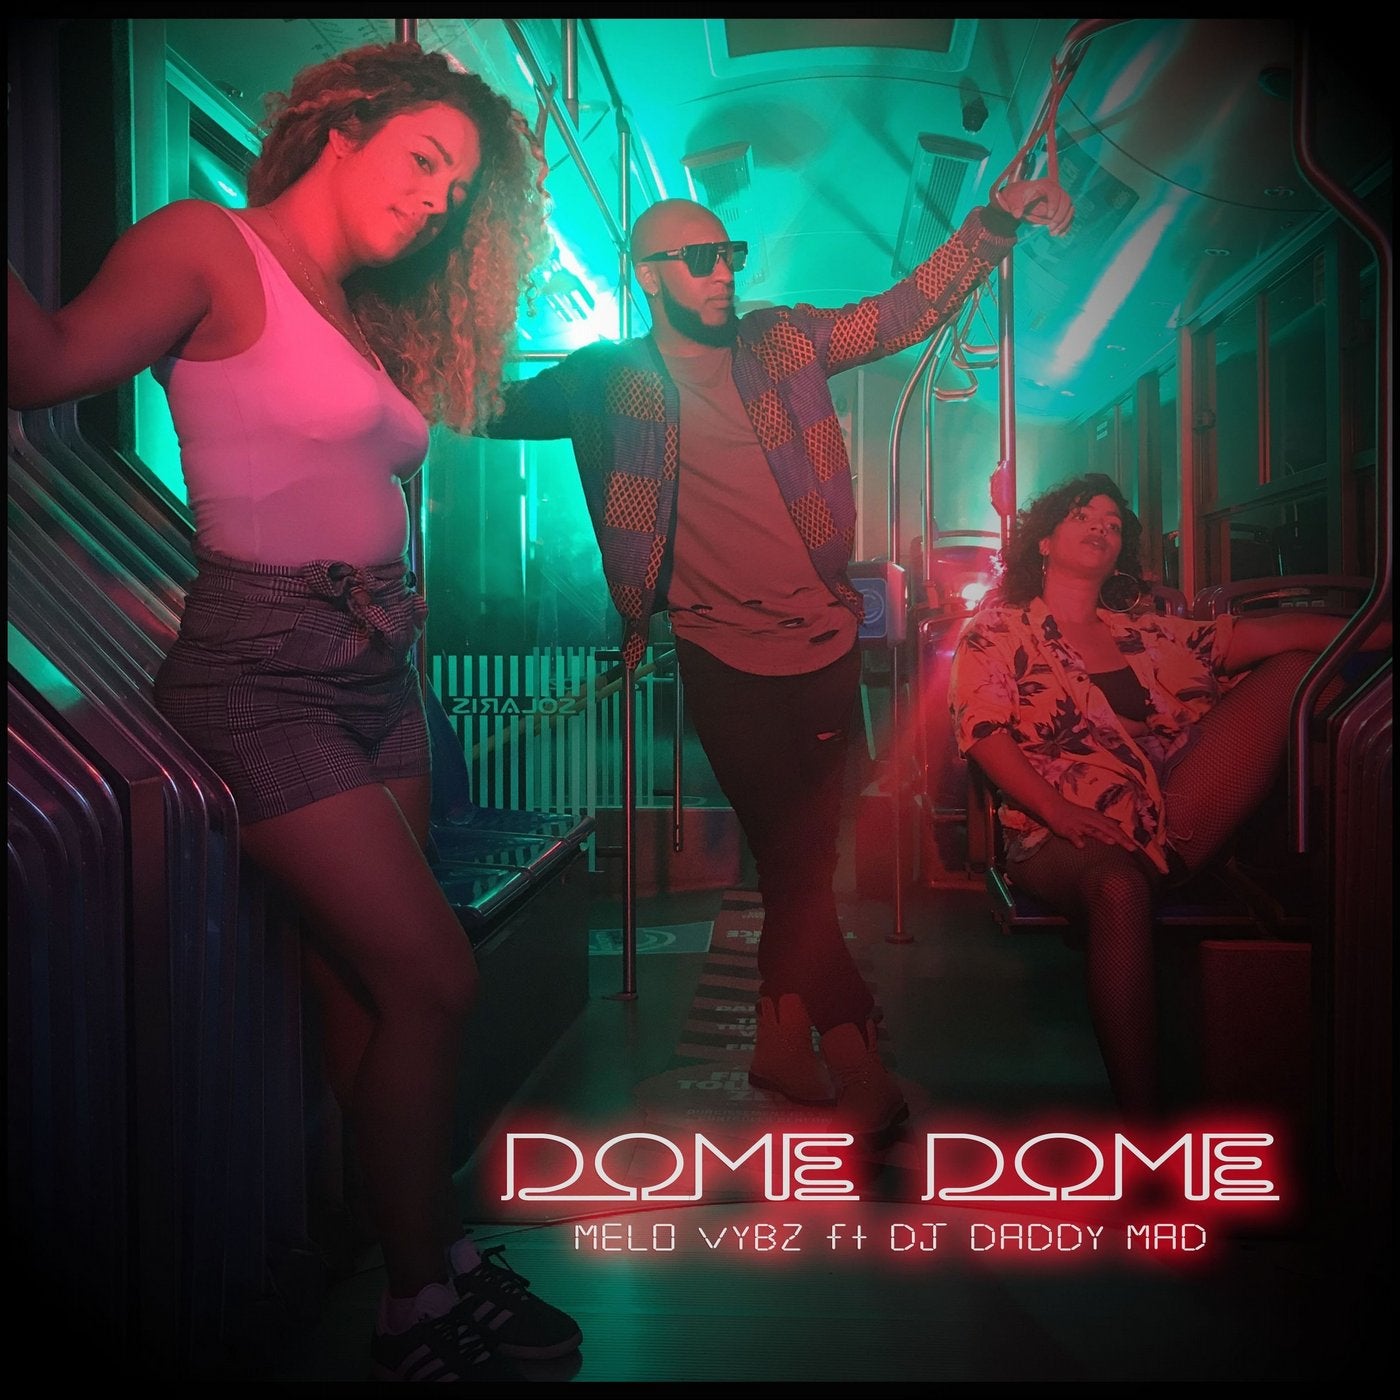 Dome dome (Radio edit)